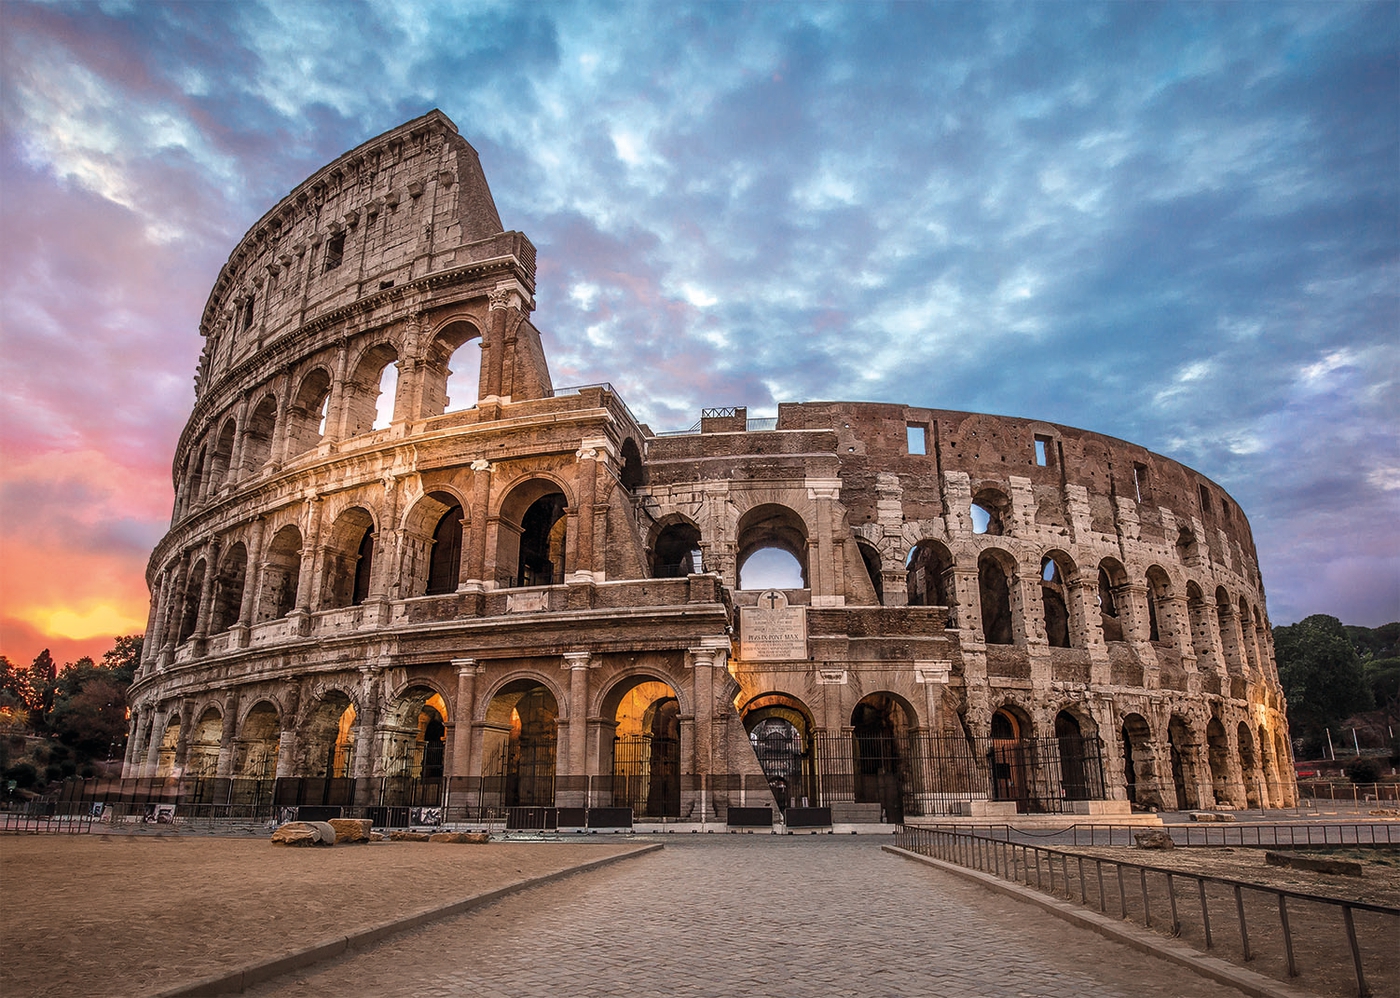 Atardecer en el Coliseo | Puzzle Clementoni 3000 Piezas